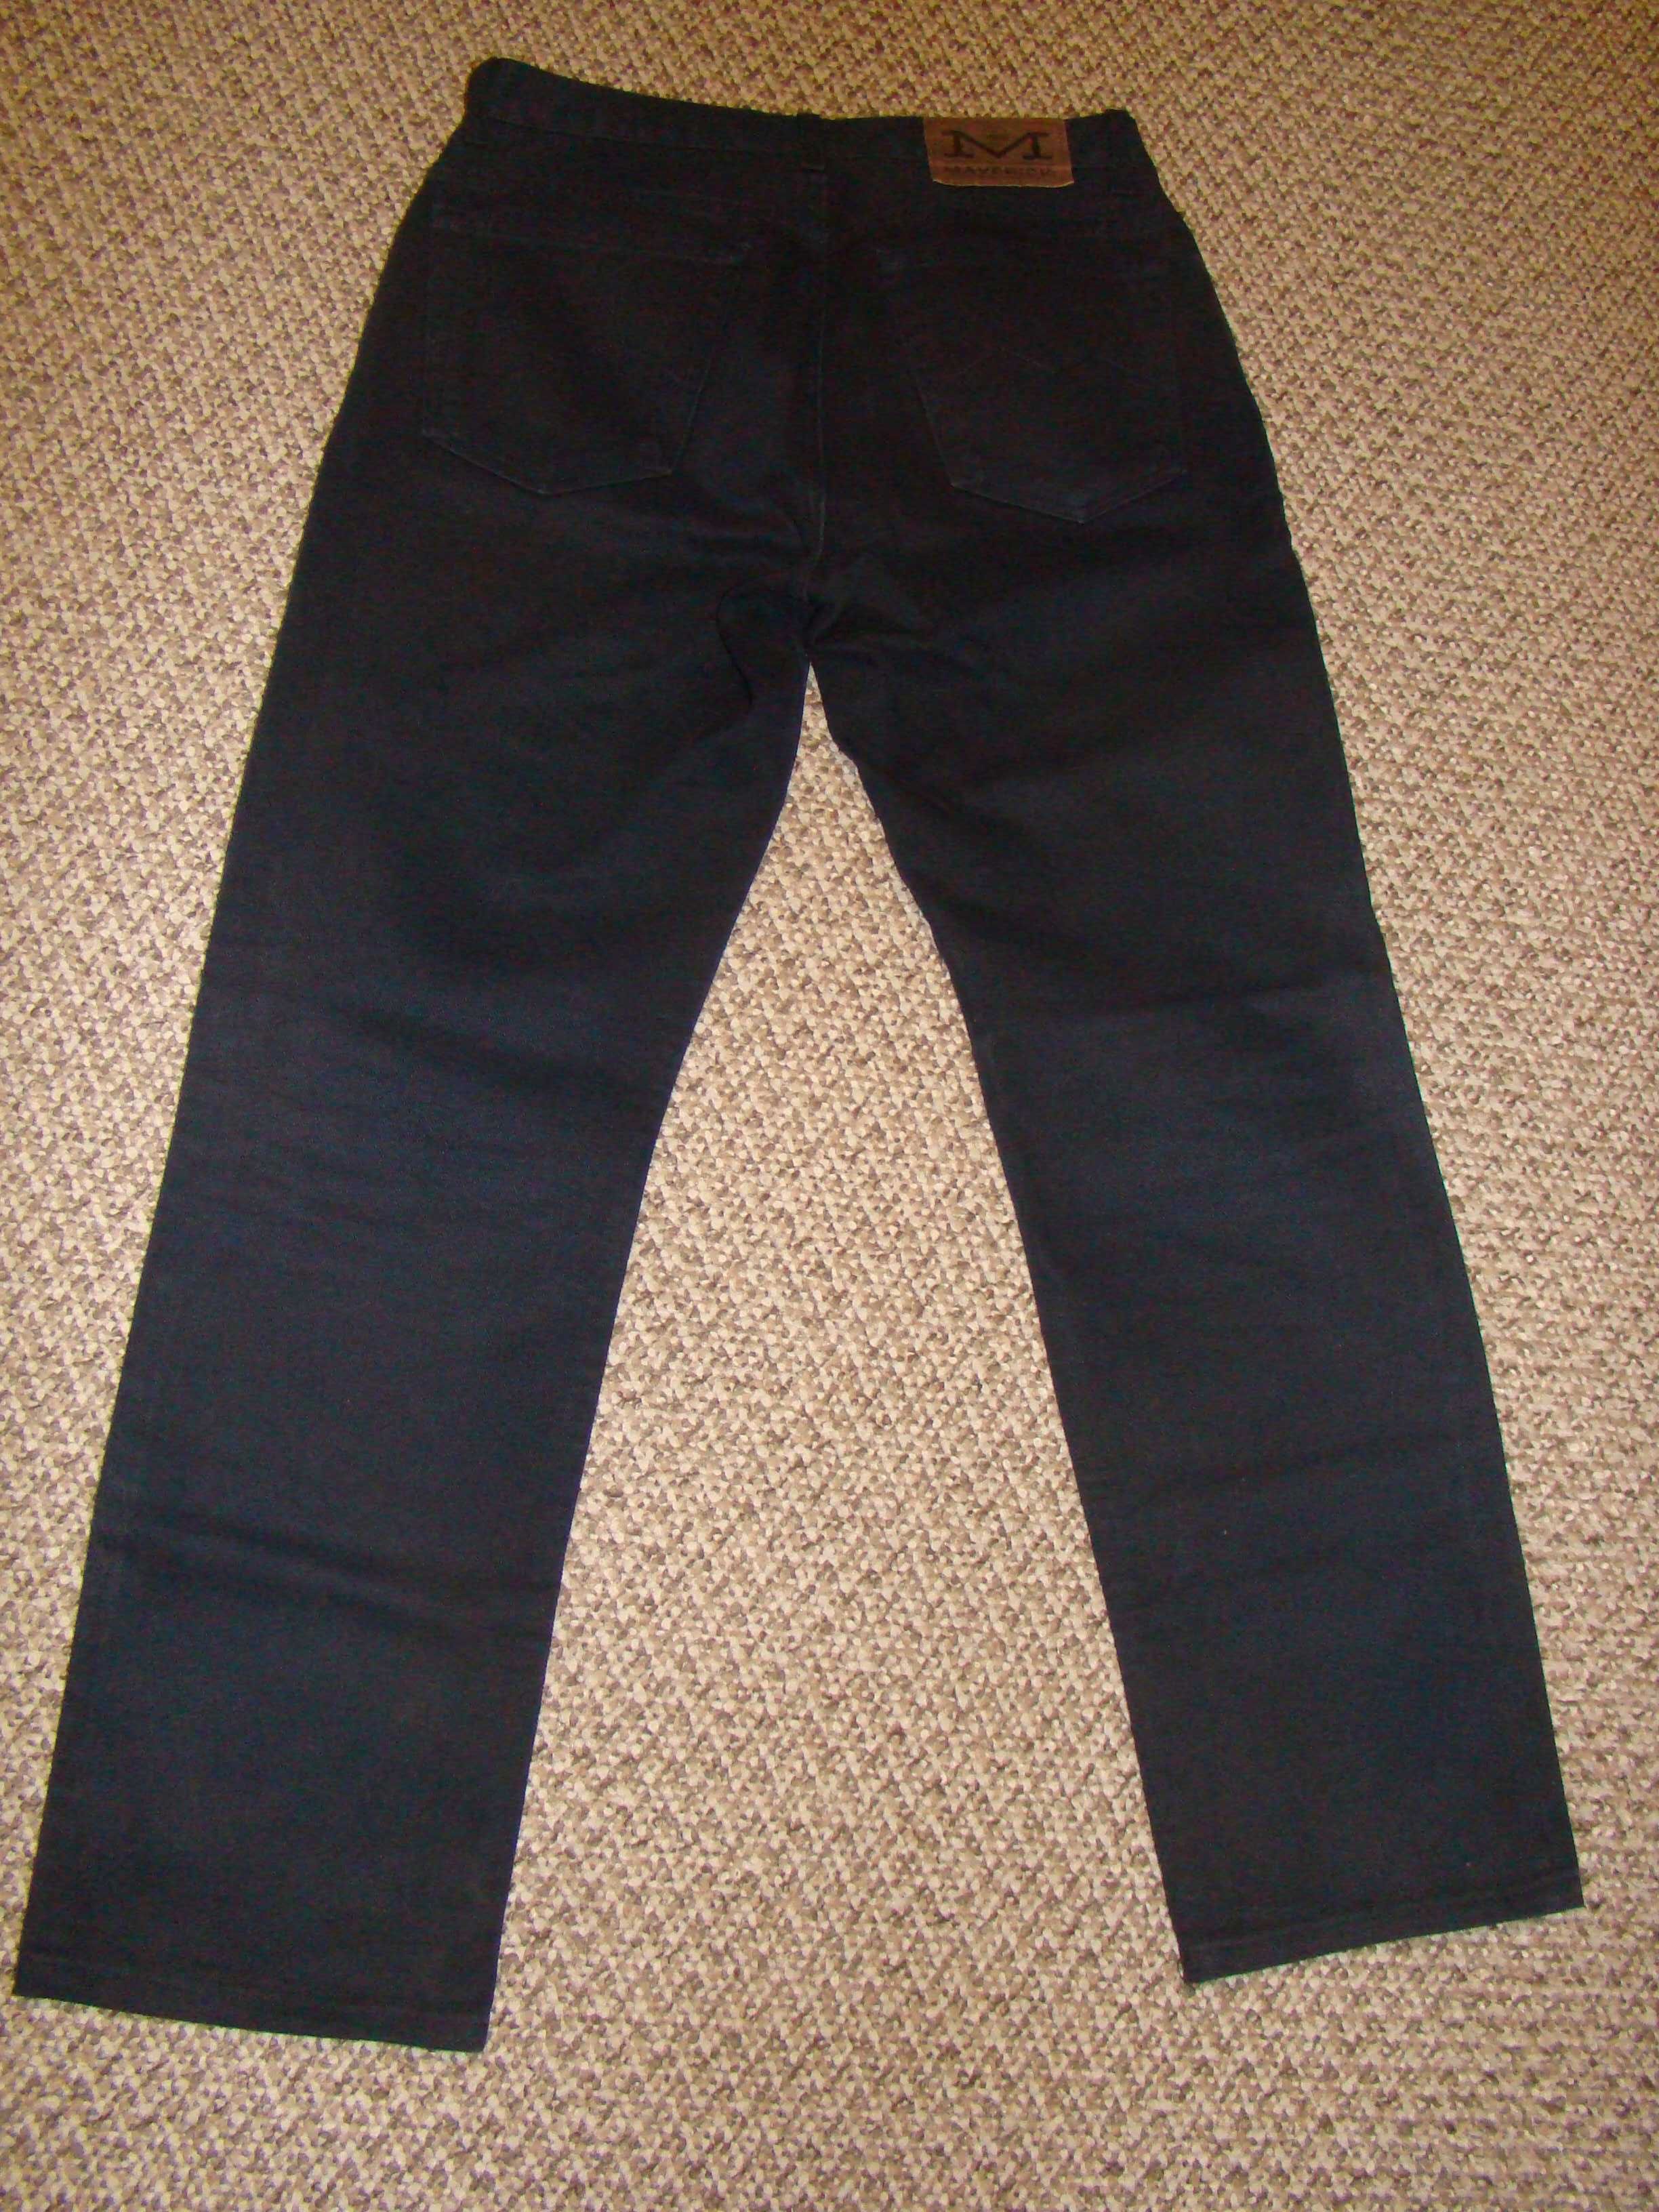 Spodnie męskie jeans Maverick w rozmiarze 33/34 ciemno granatowe